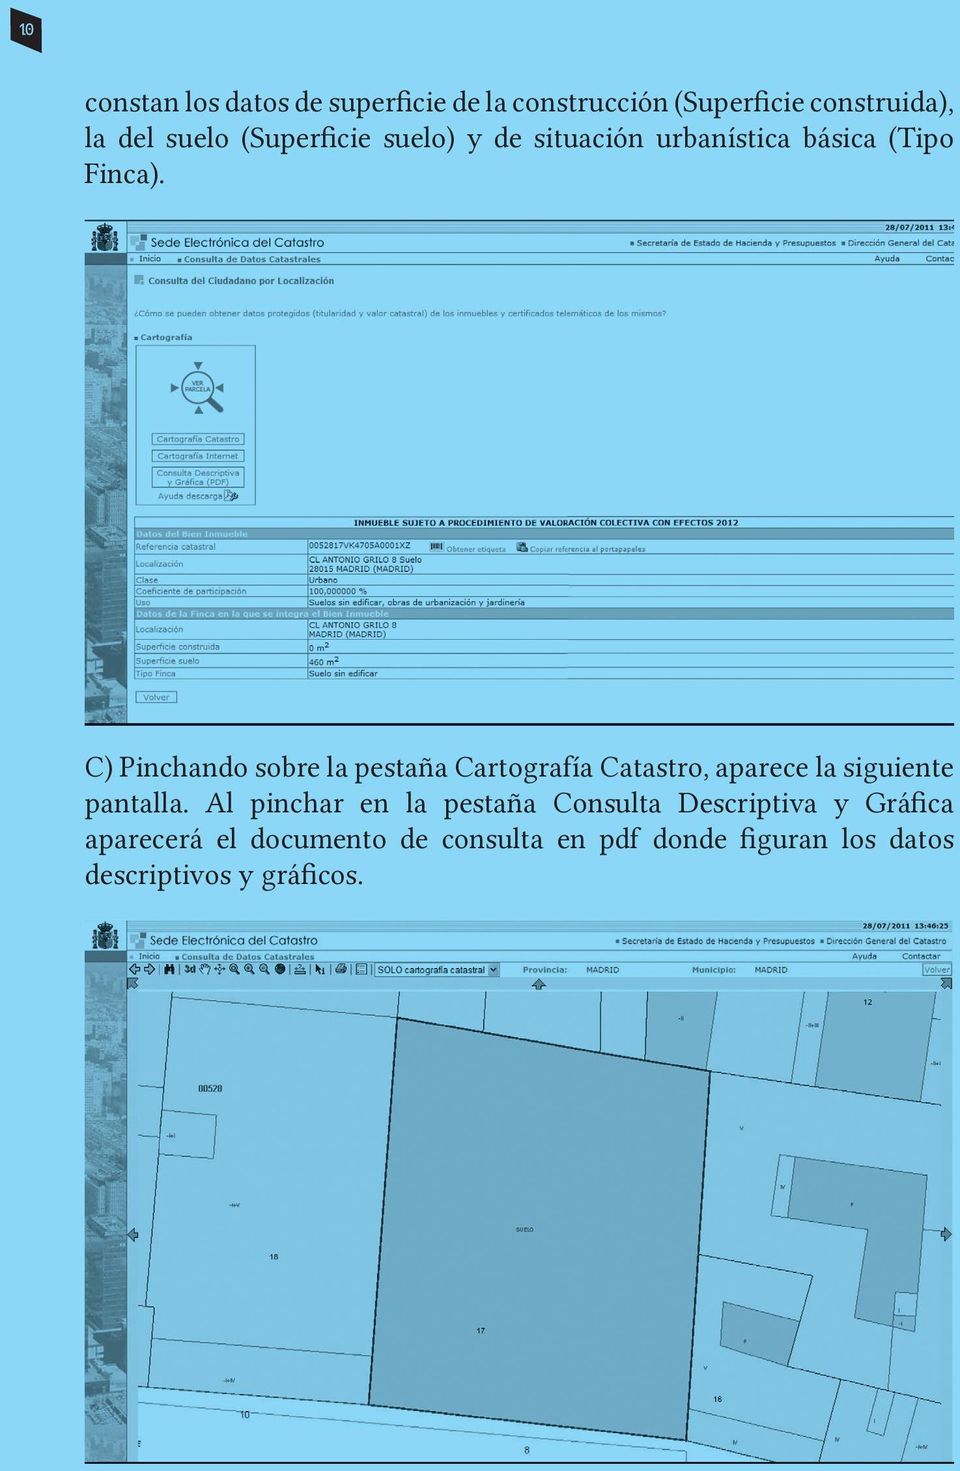 C) Pinchando sobre la pestaña Cartografía Catastro, aparece la siguiente pantalla.